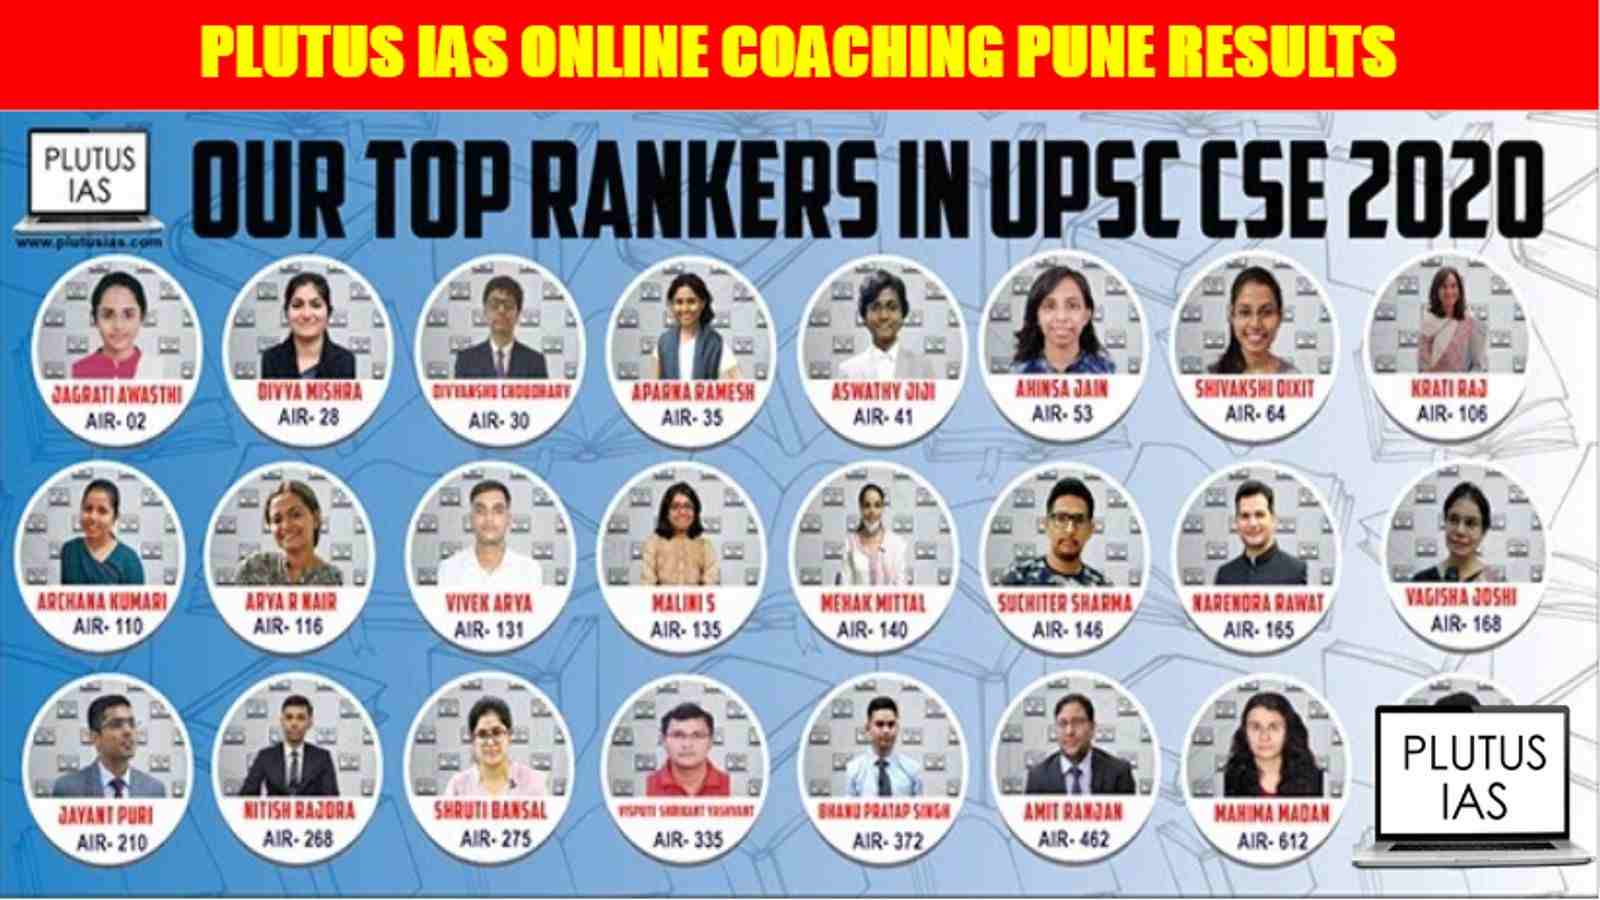 Plutus IAS Online Coaching Pune Results